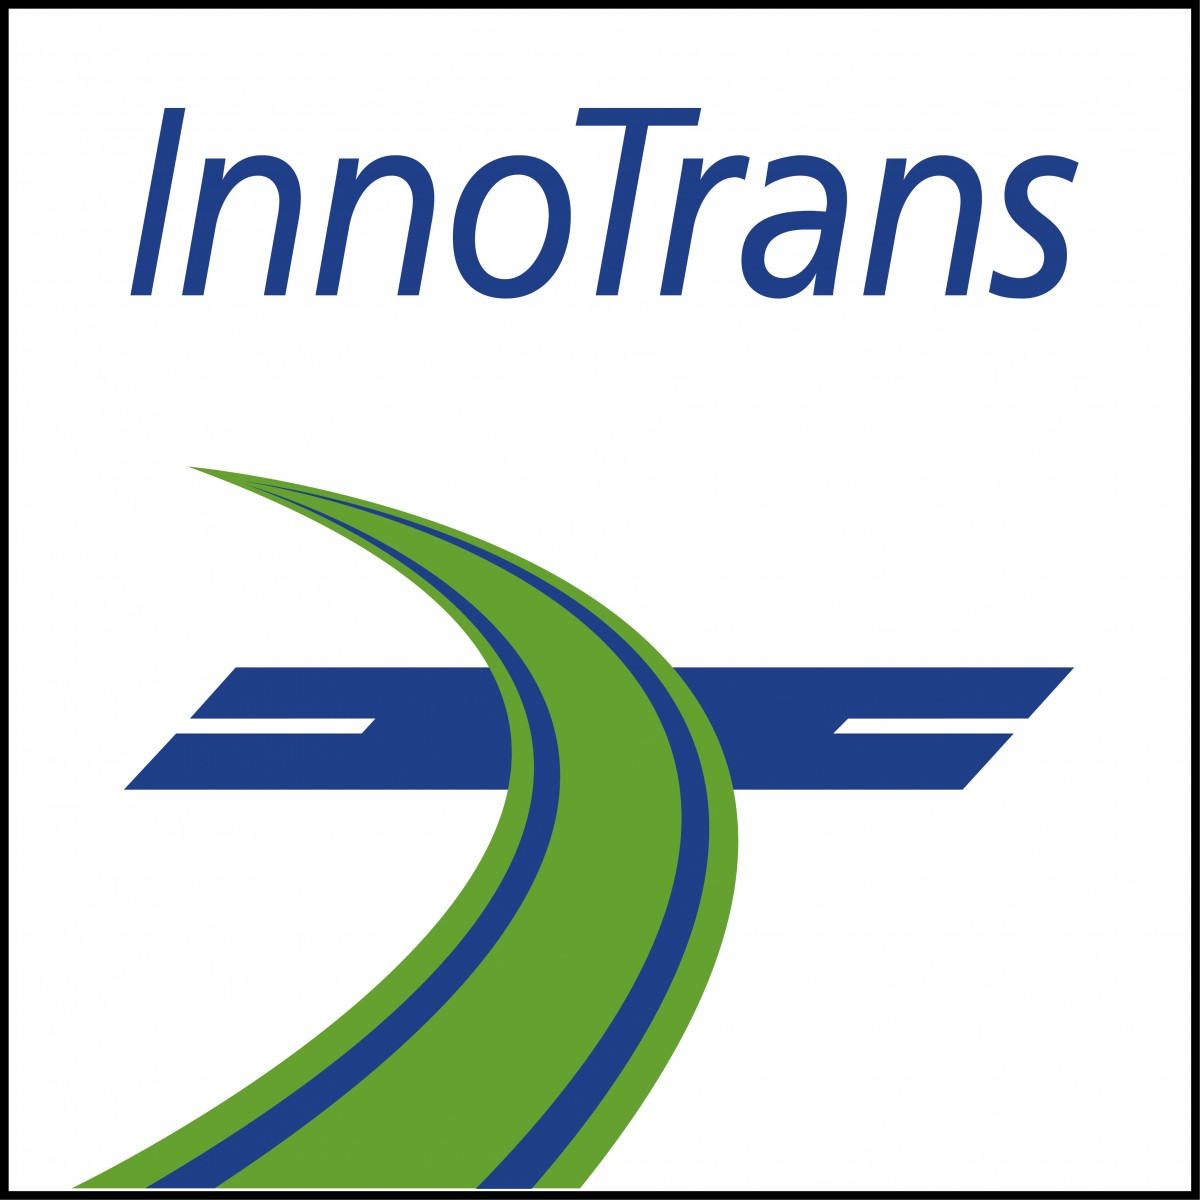 Hughes Power System примет участие в выставке InnoTrans c 20-23 сентября 2022, Берлин. 